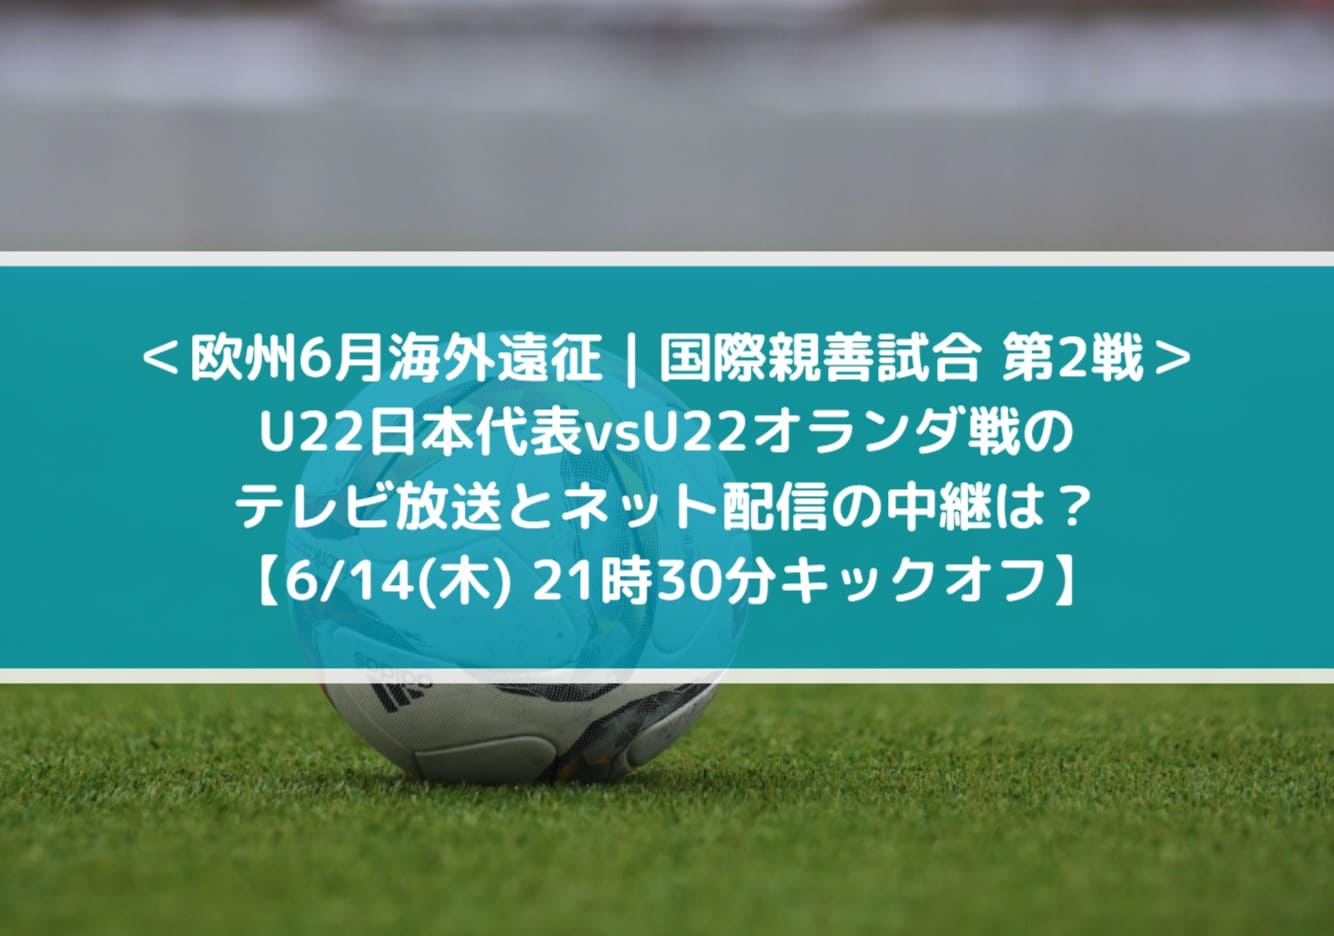 U22日本代表vsオランダ戦のテレビ放送とネット配信の中継は？ 欧州6月海外遠征 国際親善試合